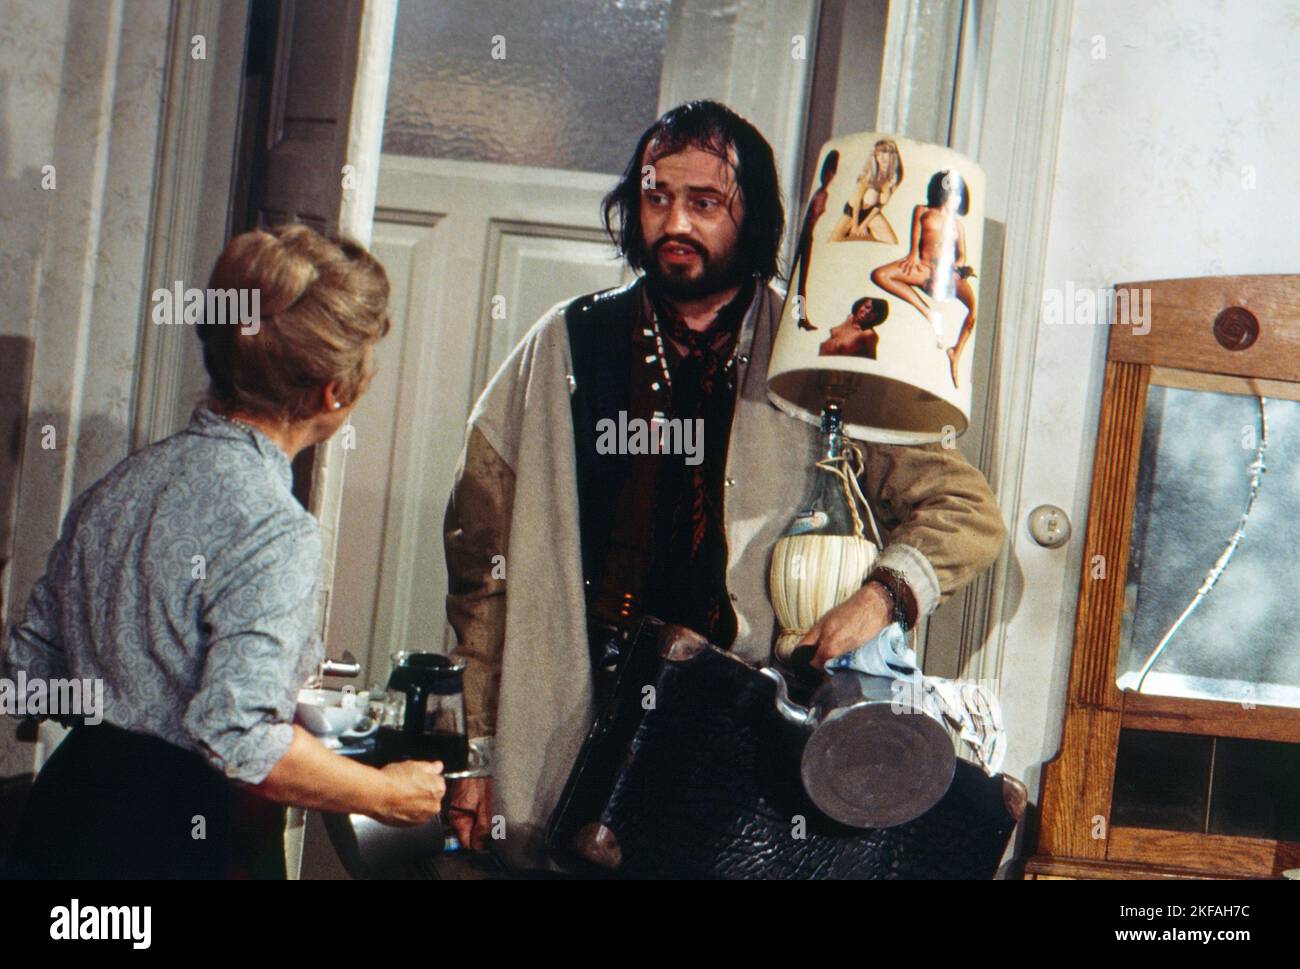 Love-in, Theaterstück nach Carl Borro Schwerin, Deutschland 1971, Regie: Karl Heinz Bieber, Darsteller: Bruni Löbel, András Fricsay Foto Stock